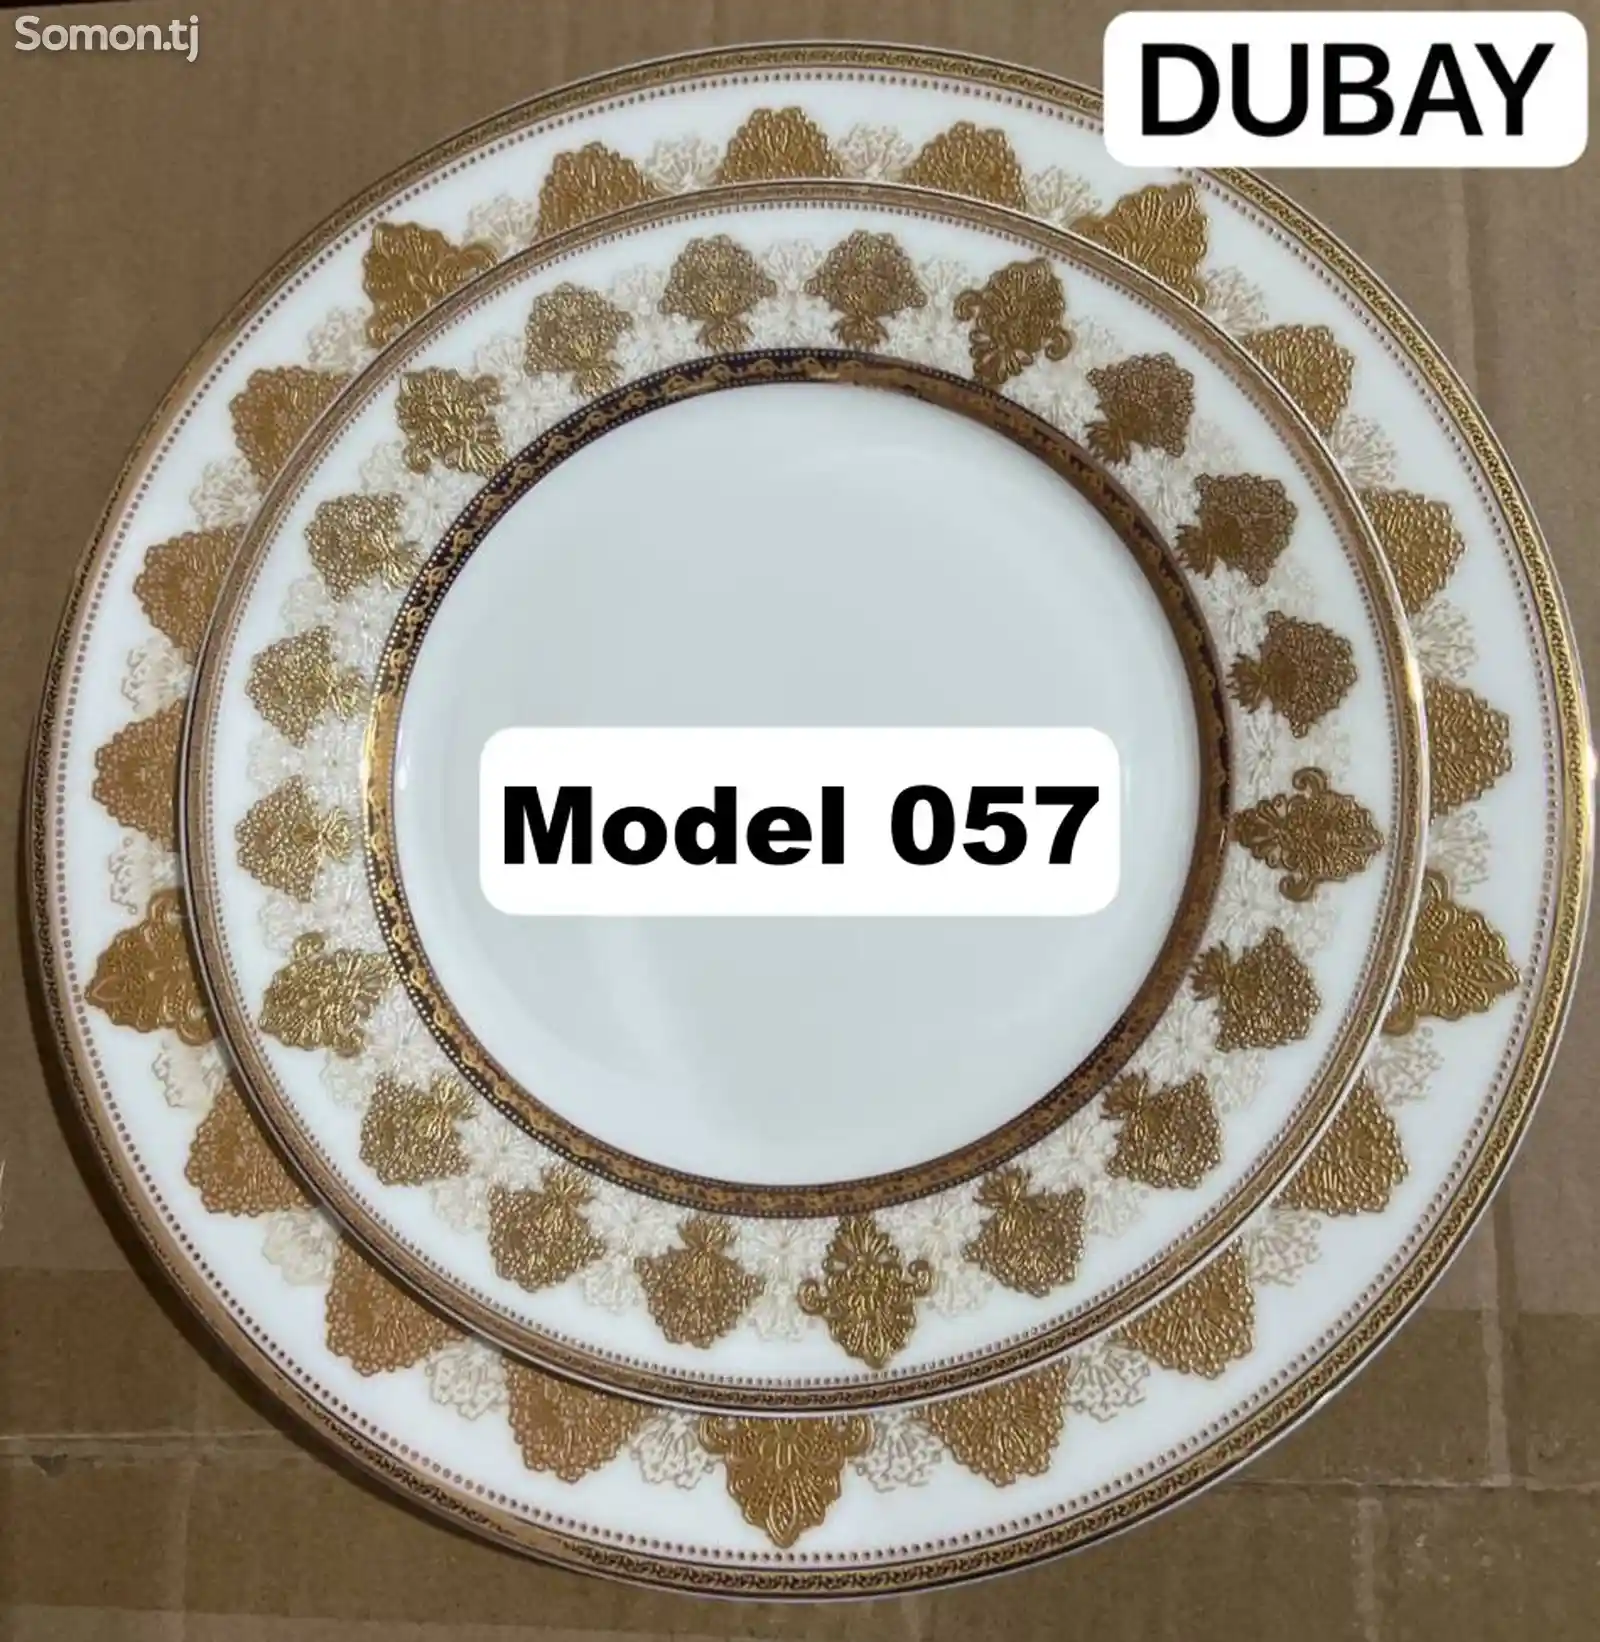 Набор посуды Dubay-057 комплект 6-7